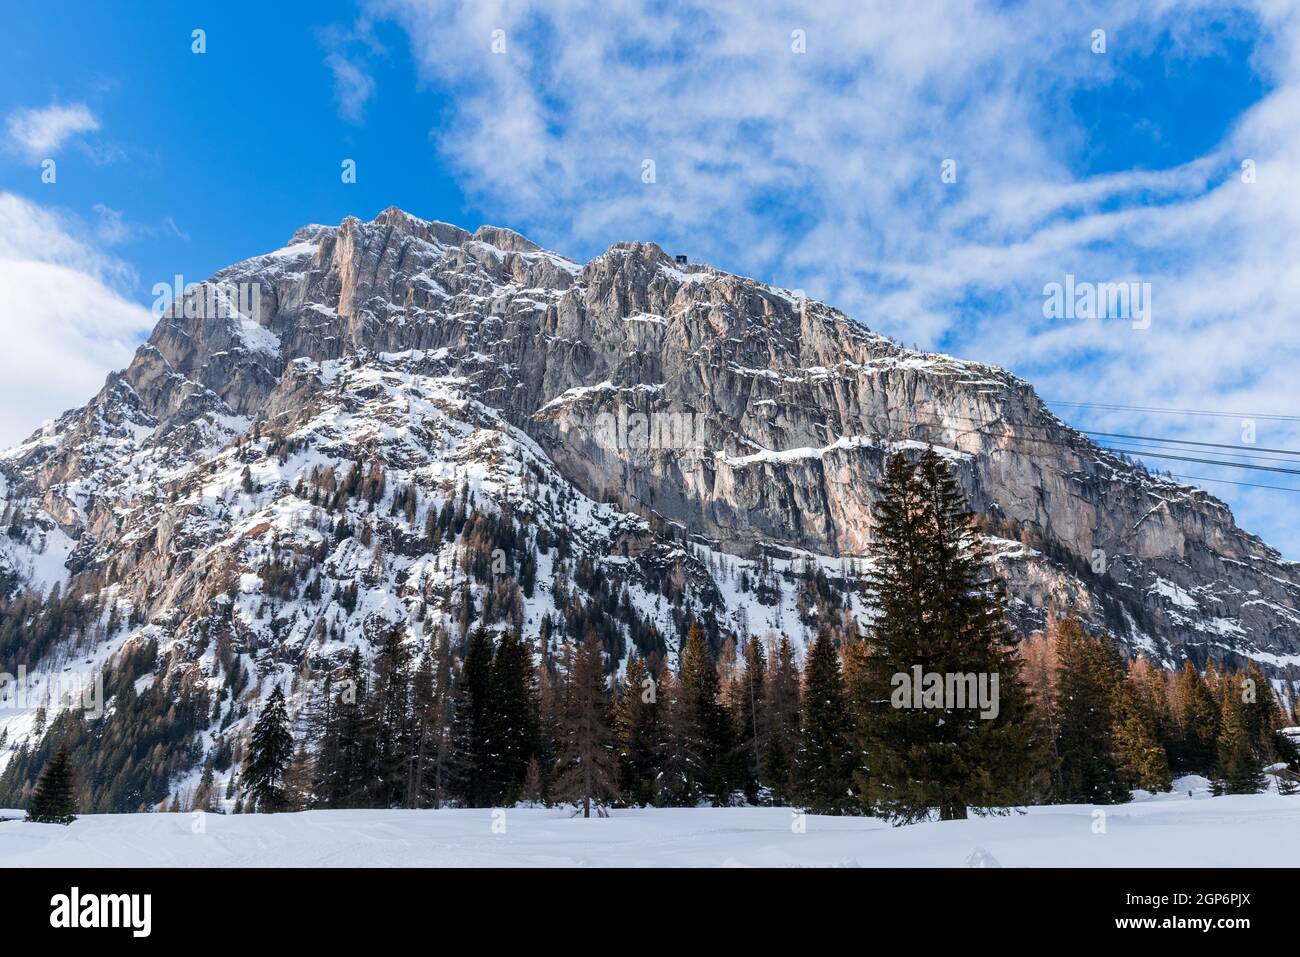 Schneebedeckter felsiger Gipfel in den Europäischen Alpen an einem klaren Wintertag. Auf dem Gipfel des Berges ist eine Seilbahnstation zu sehen. Stockfoto